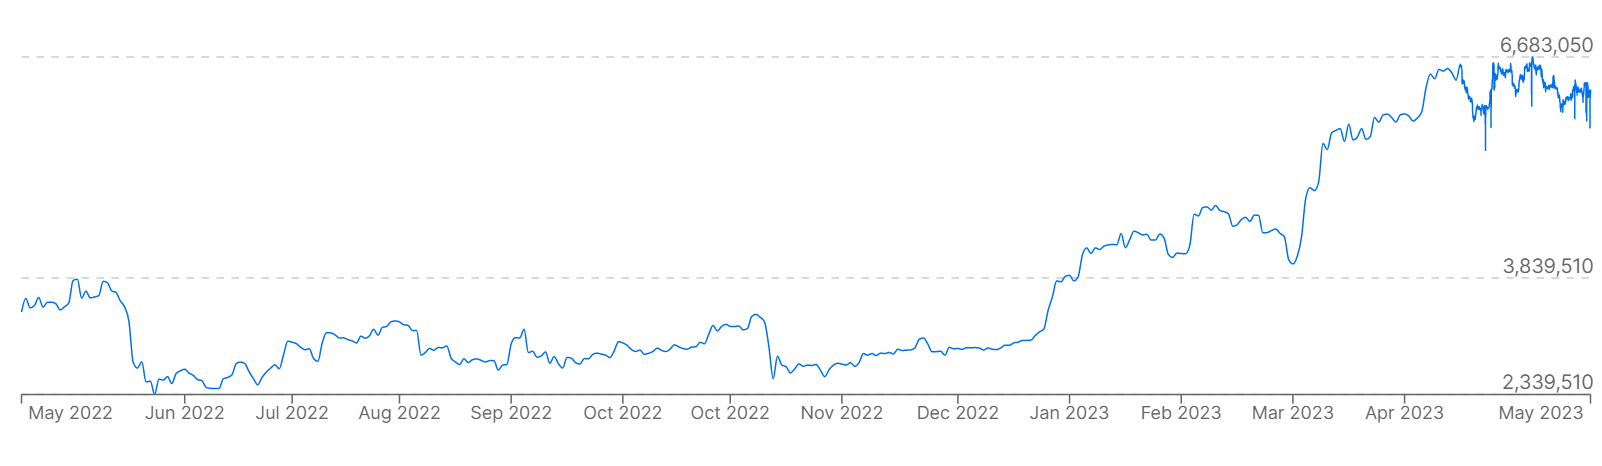 Un gráfico que muestra los precios de Bitcoin (BTC) frente al peso argentino durante los últimos 12 meses.